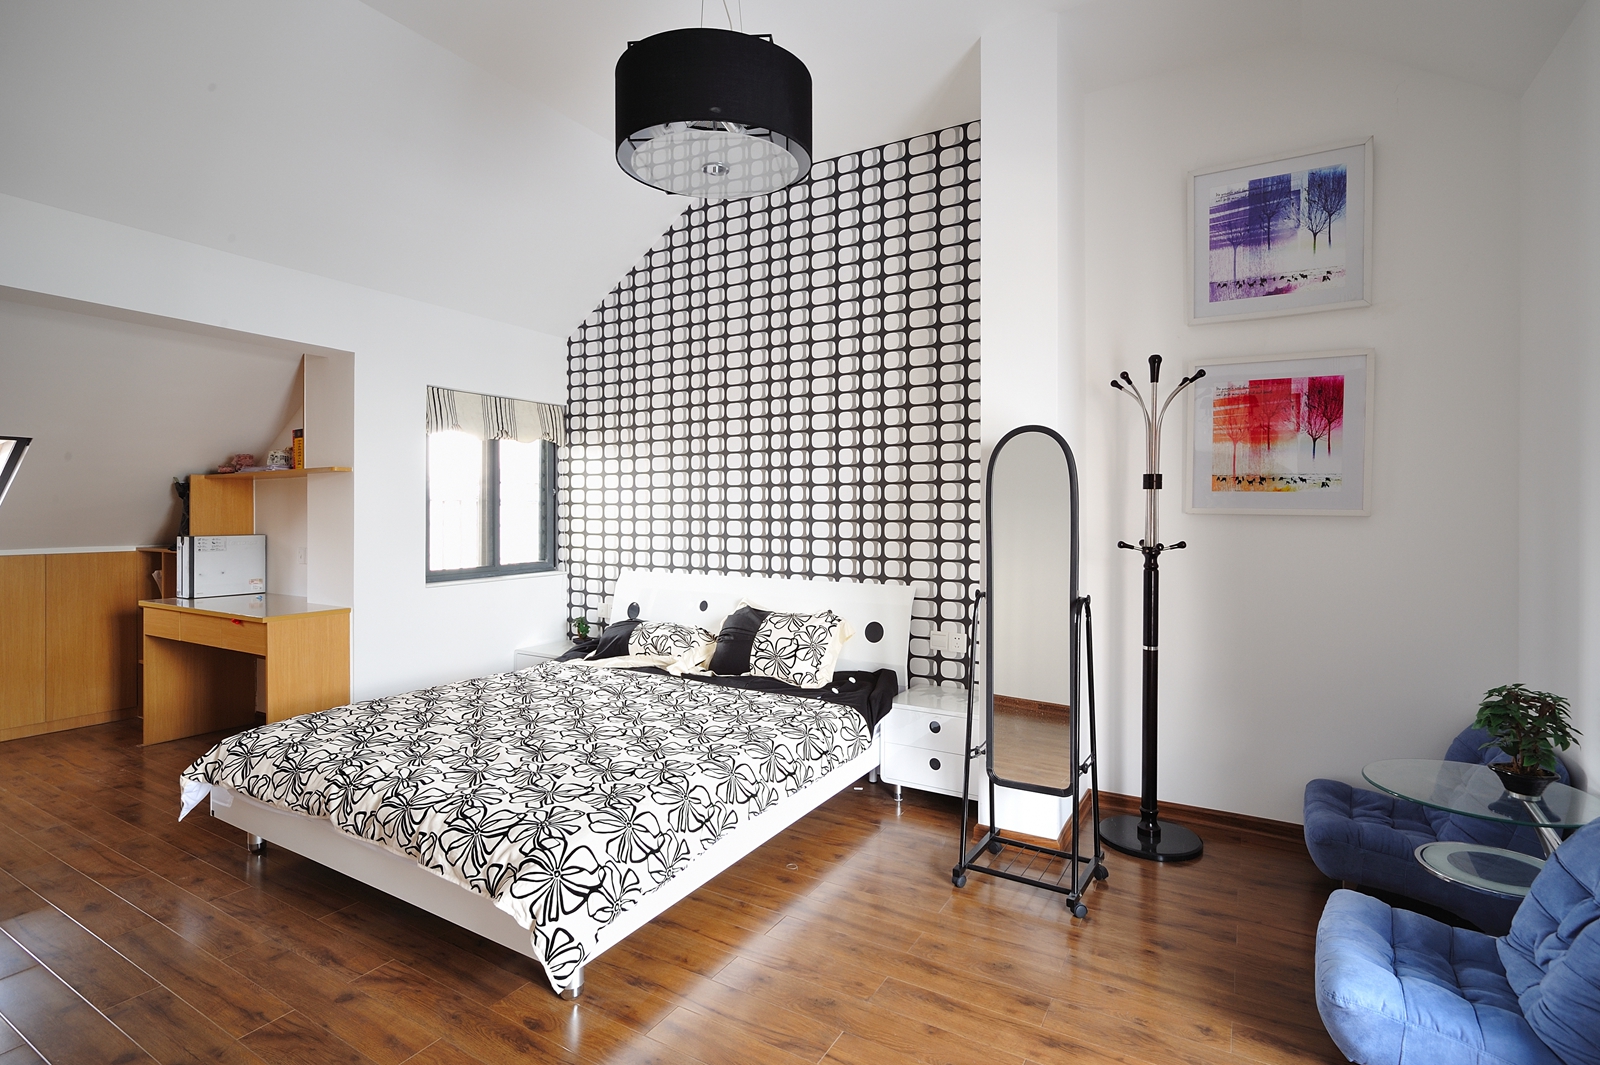 复室 混搭 现代 美式 卧室图片来自朗润装饰工程有限公司在现代 美式混搭风的分享